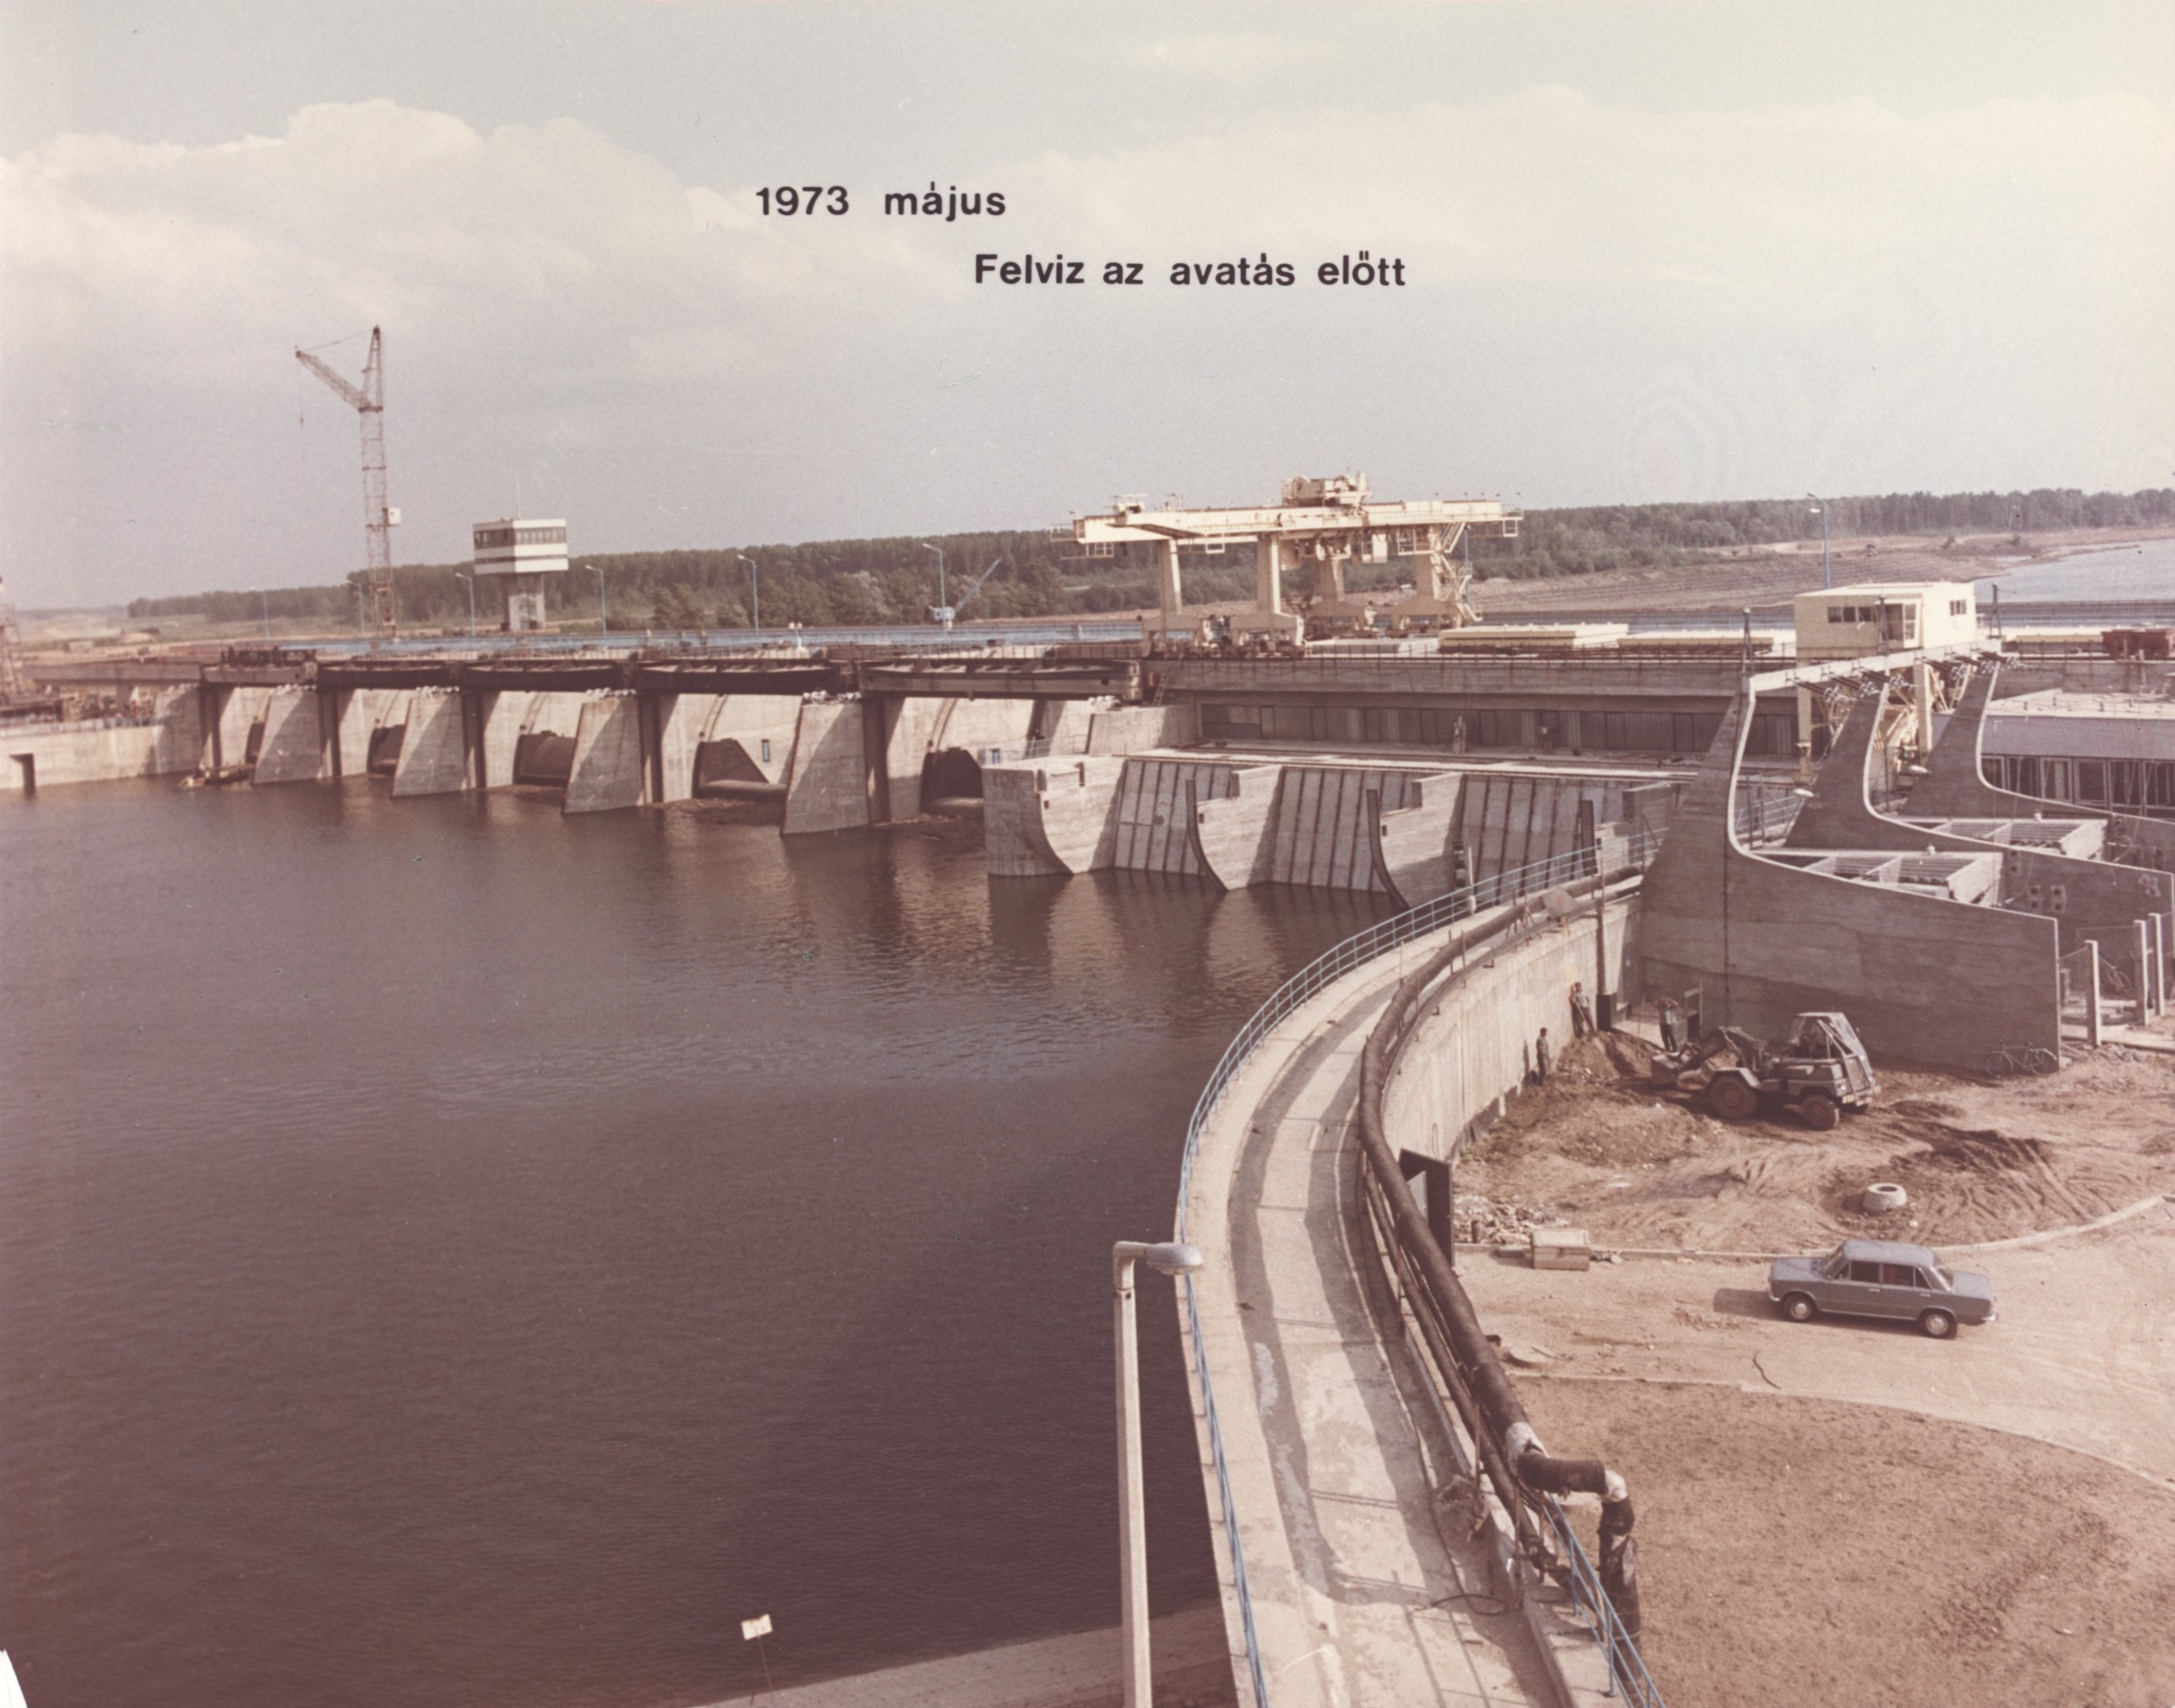 Felvíz az avatás előtt, 1973. május (Magyar Környezetvédelmi és Vízügyi Múzeum - Duna Múzeum CC BY-NC-SA)